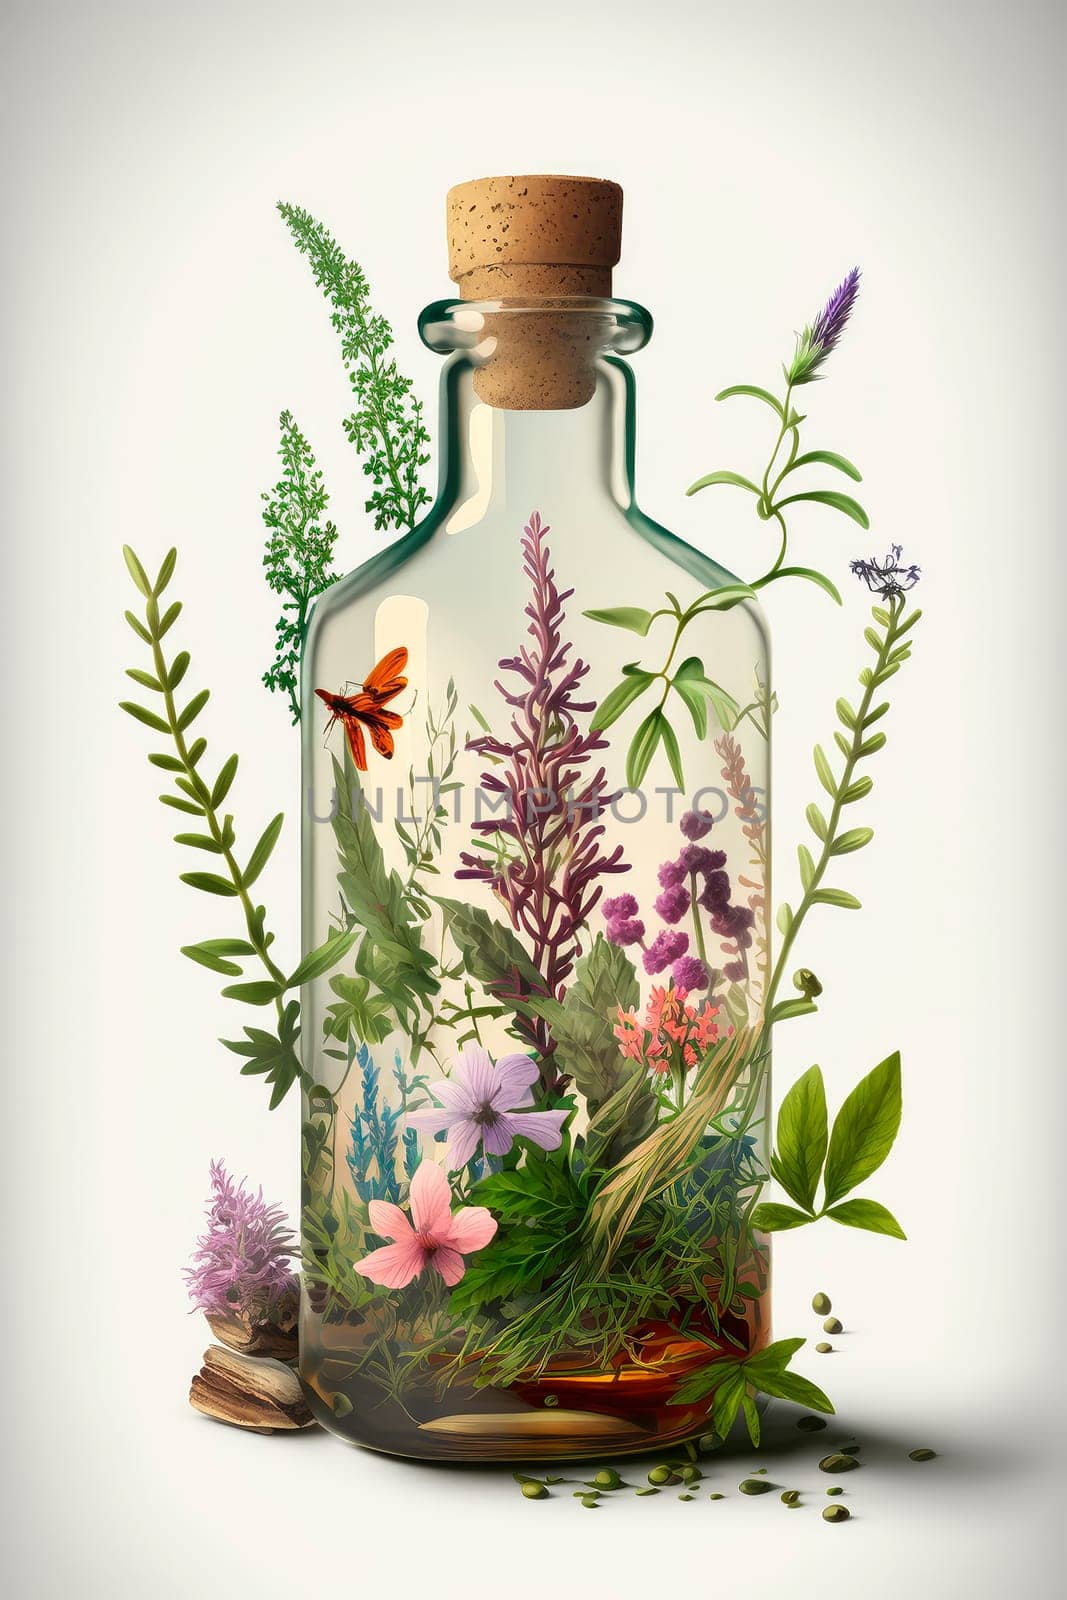 Herb oil bottles homeopathy herbs. by yanadjana